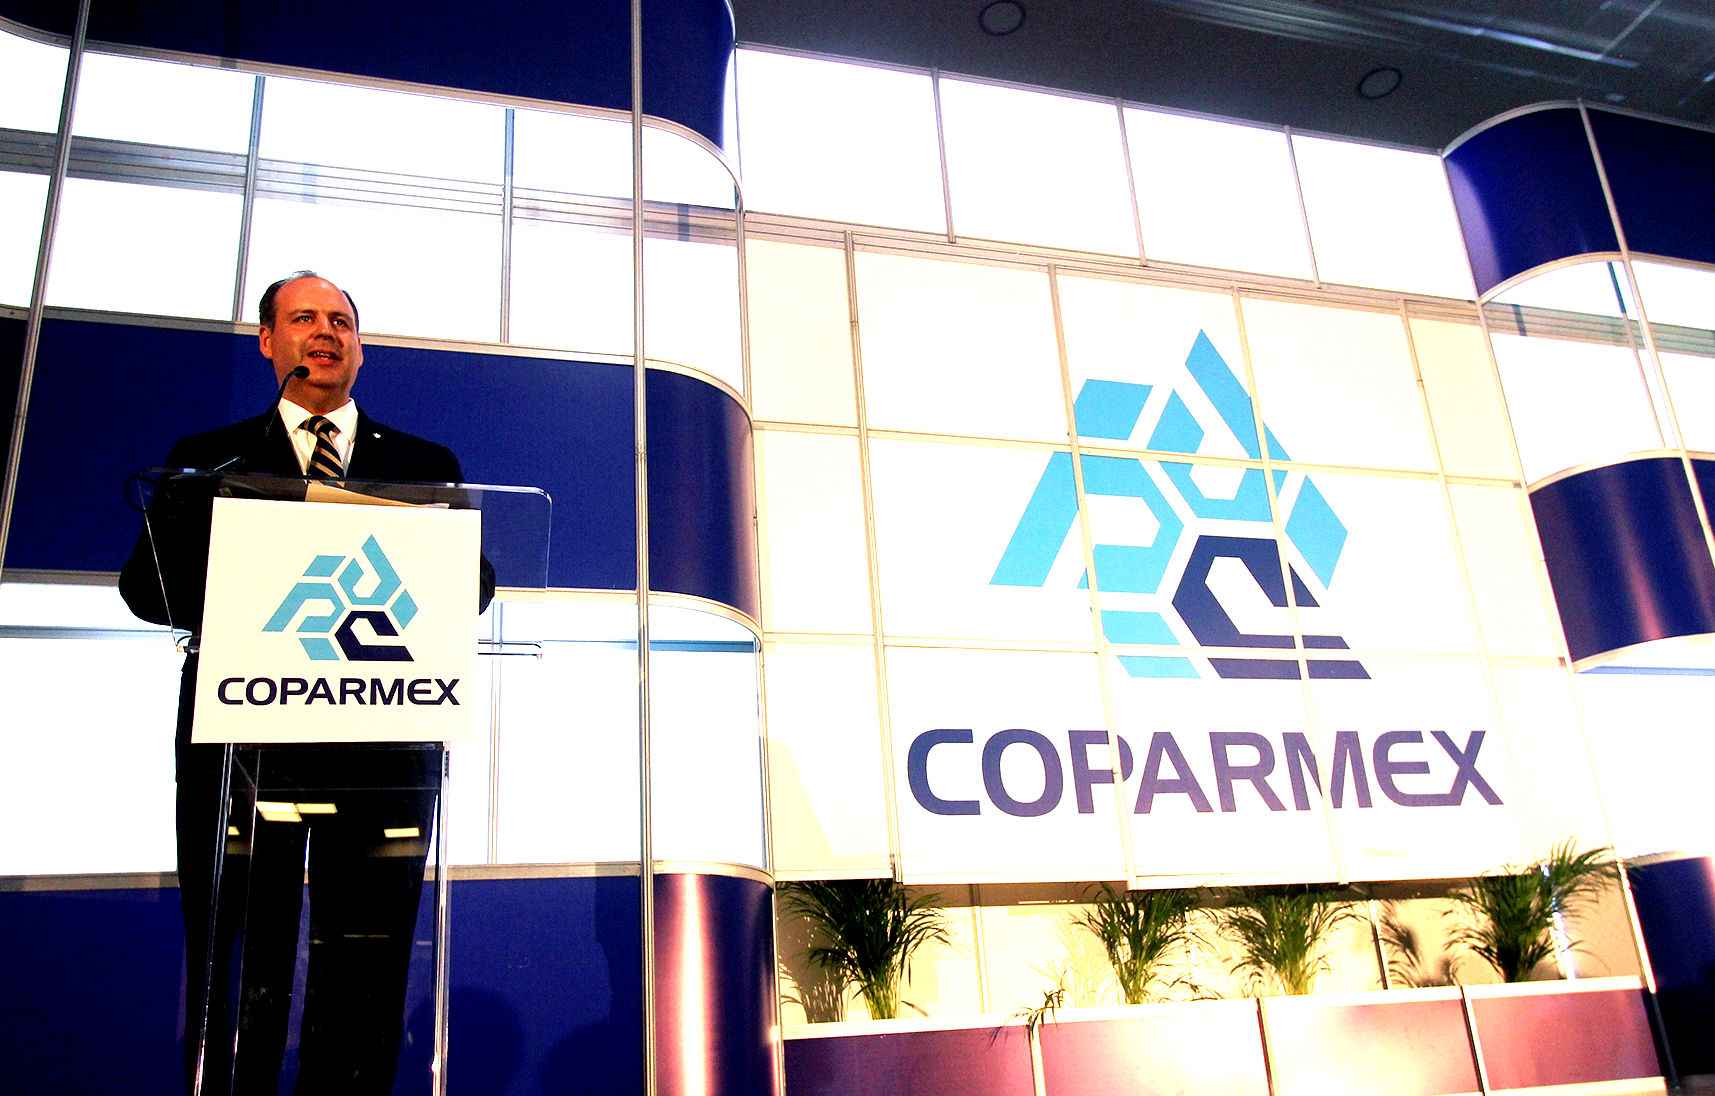 Sector vivienda, 4 años de nueva visión empresarial: Coparmex - Cop ok